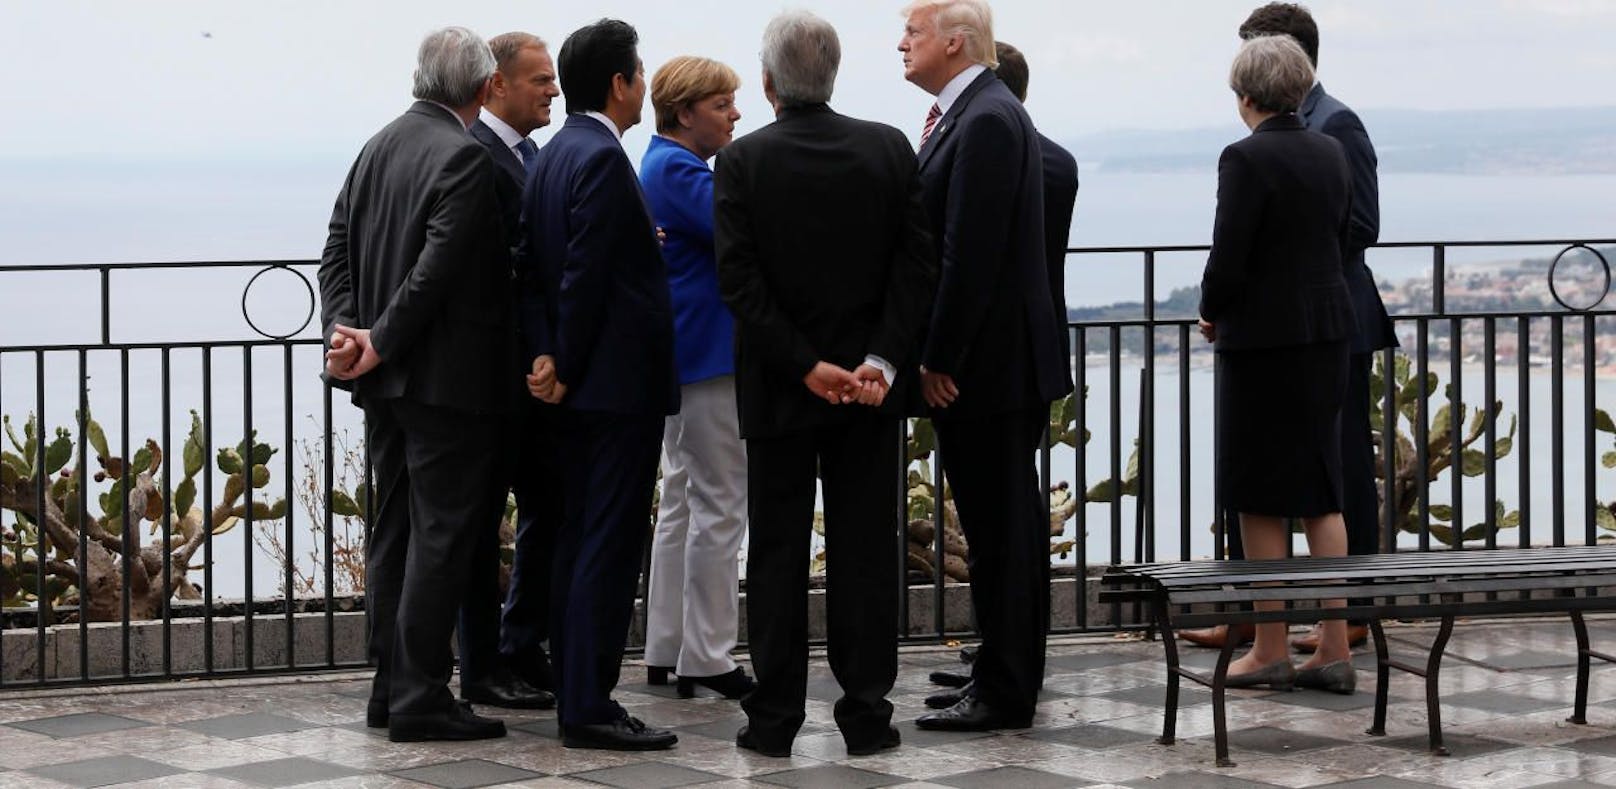 G-7-Gipfel mit Trump: Streit um Klima, Migration